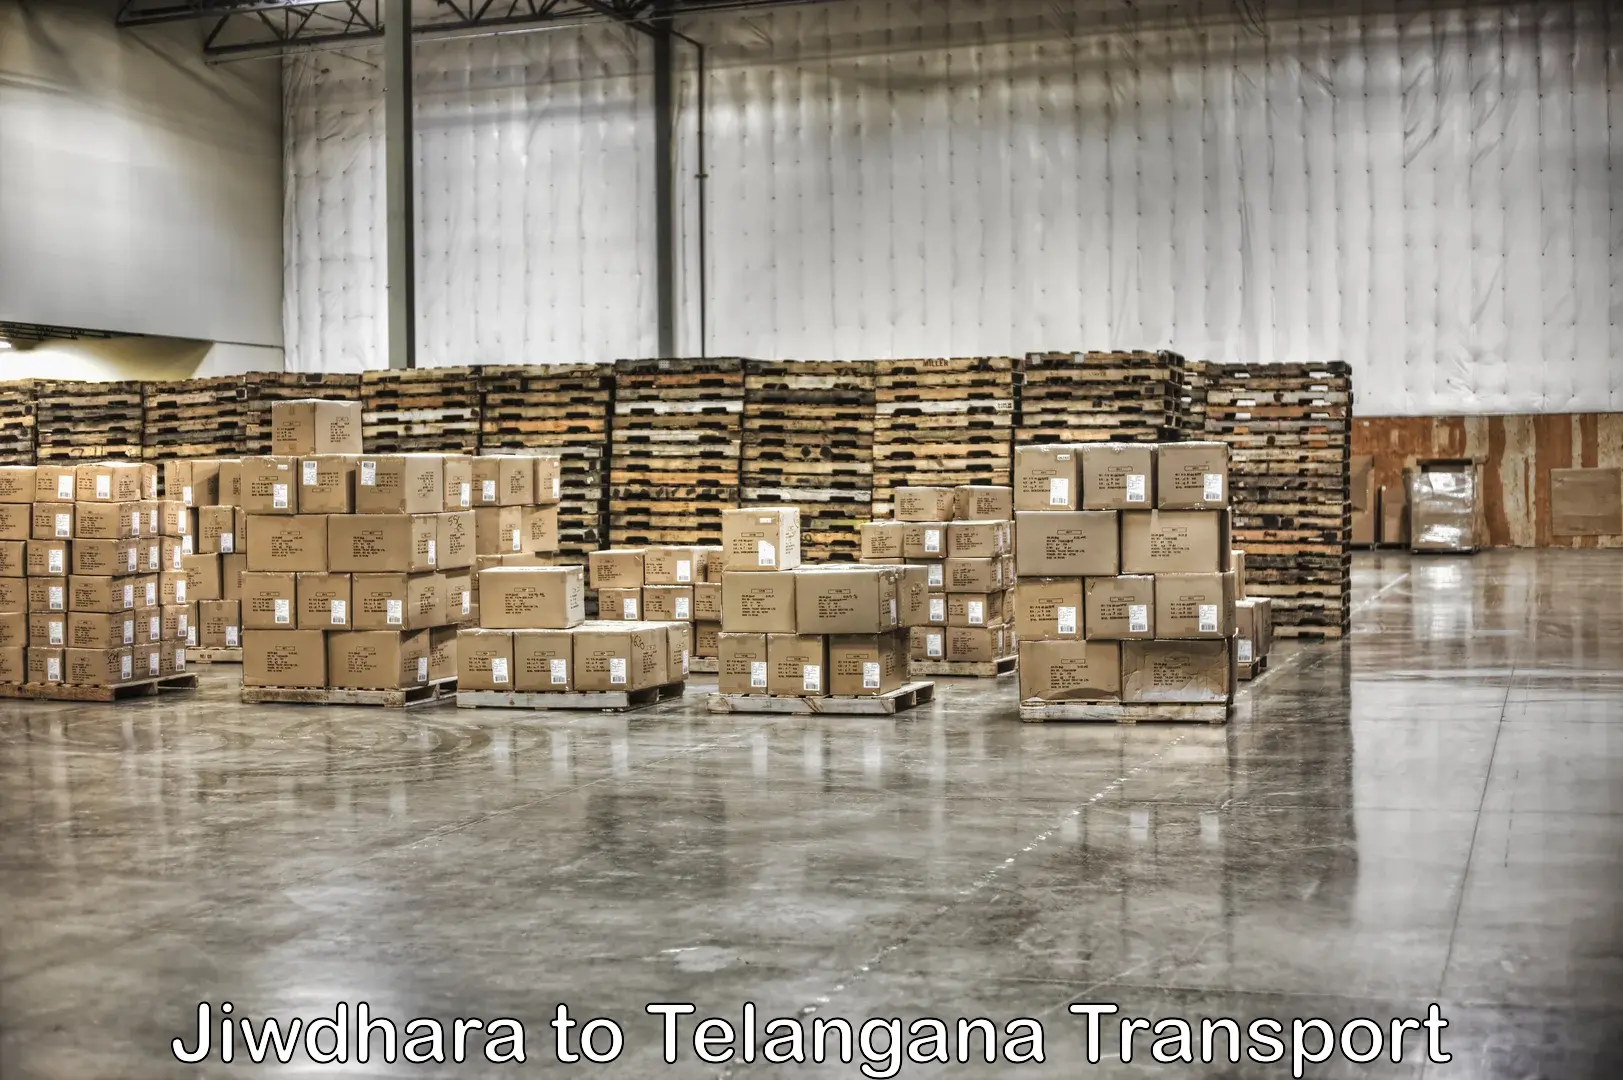 Two wheeler parcel service Jiwdhara to Gangadhara